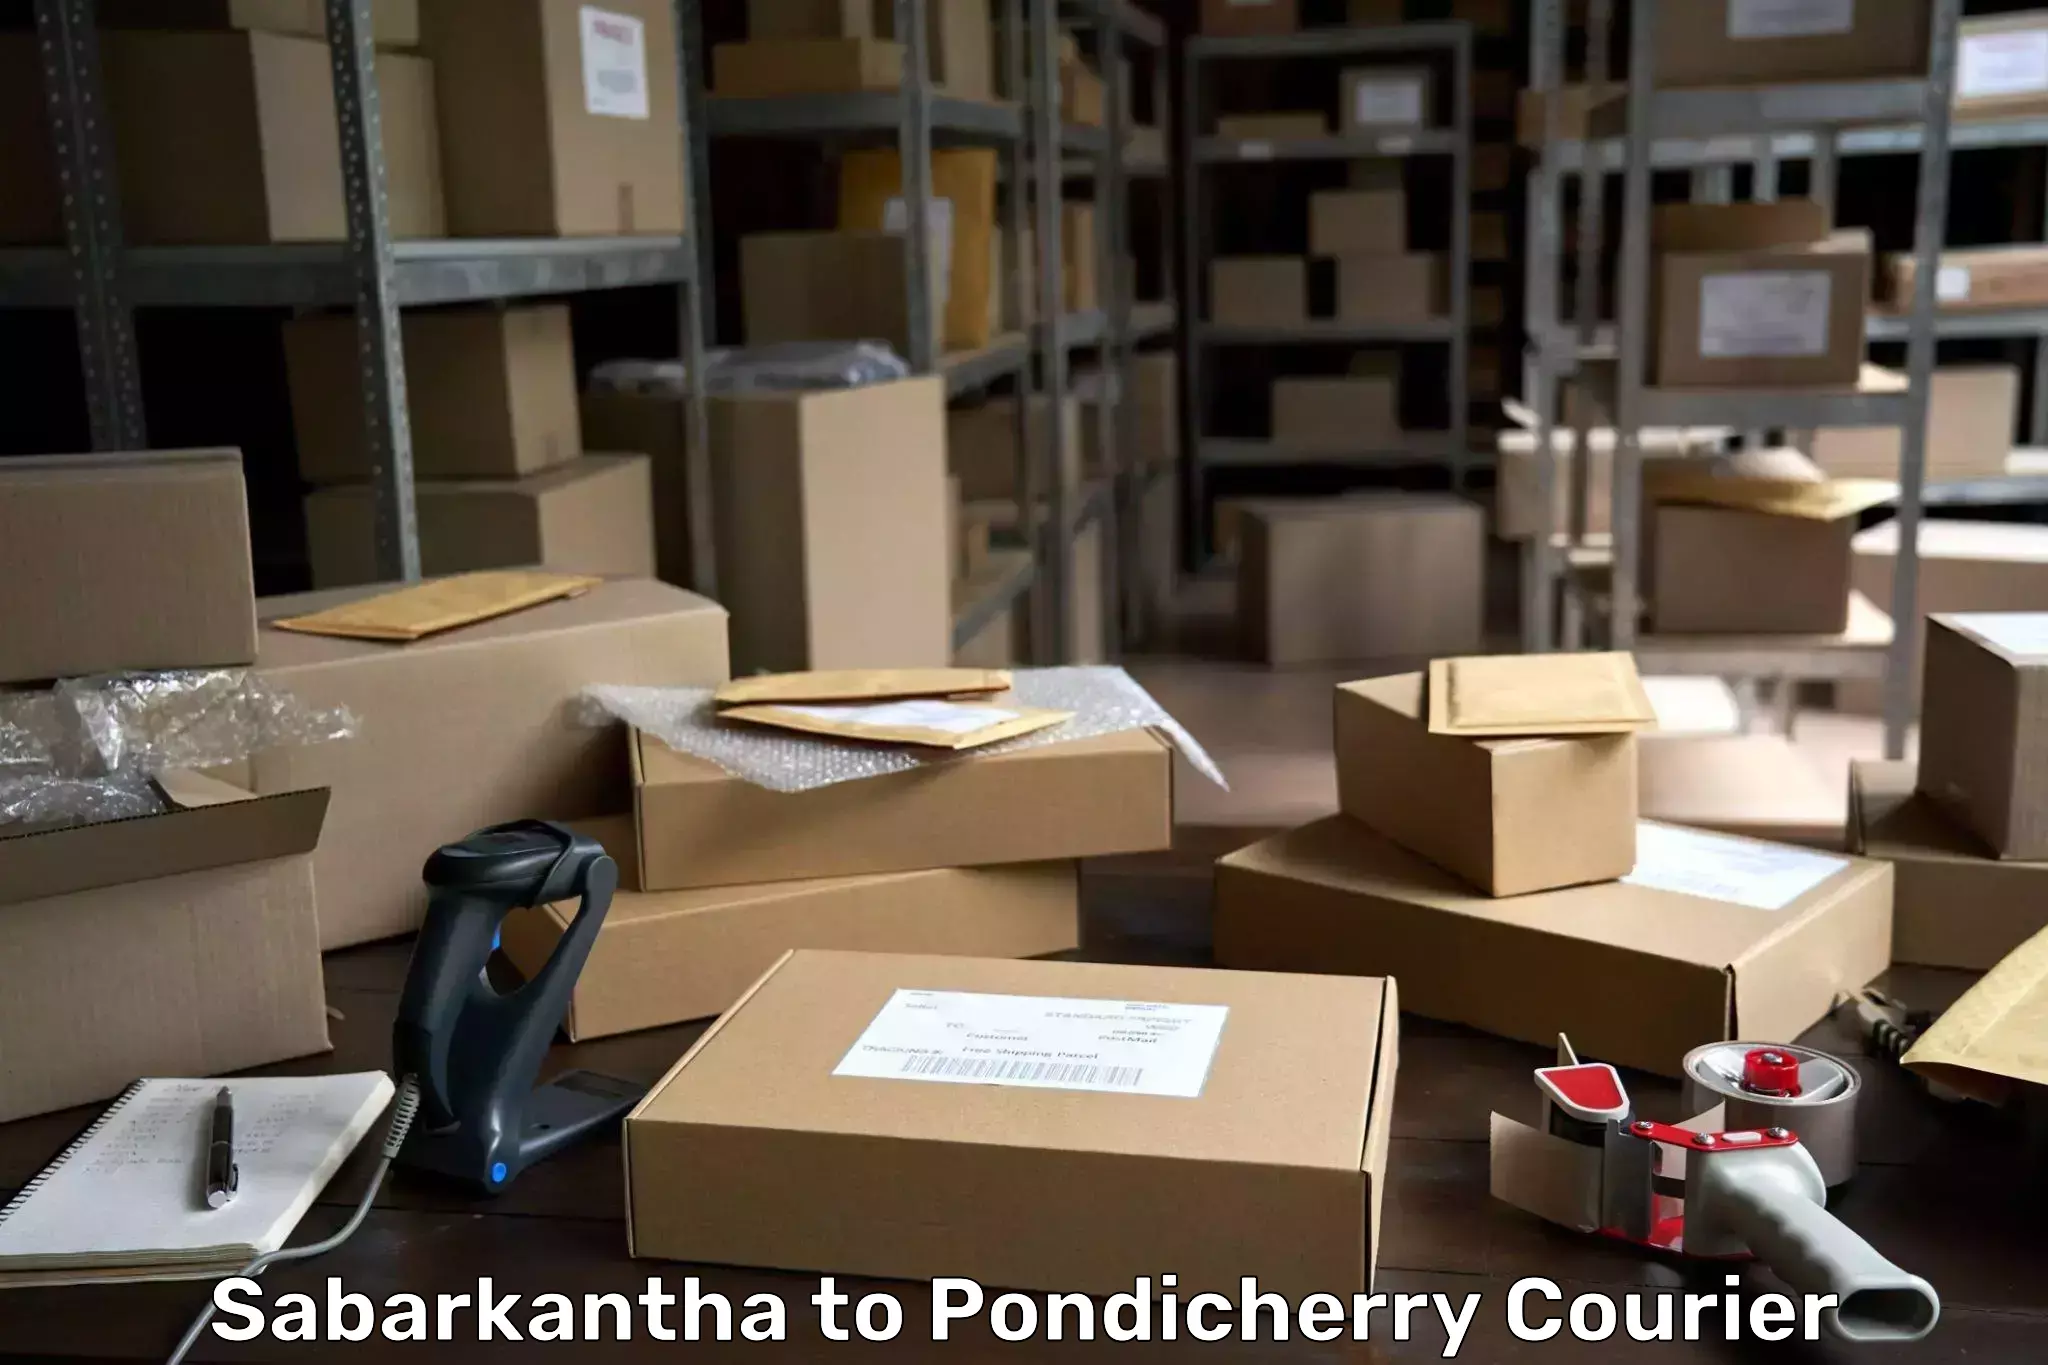 Urban courier service Sabarkantha to Pondicherry